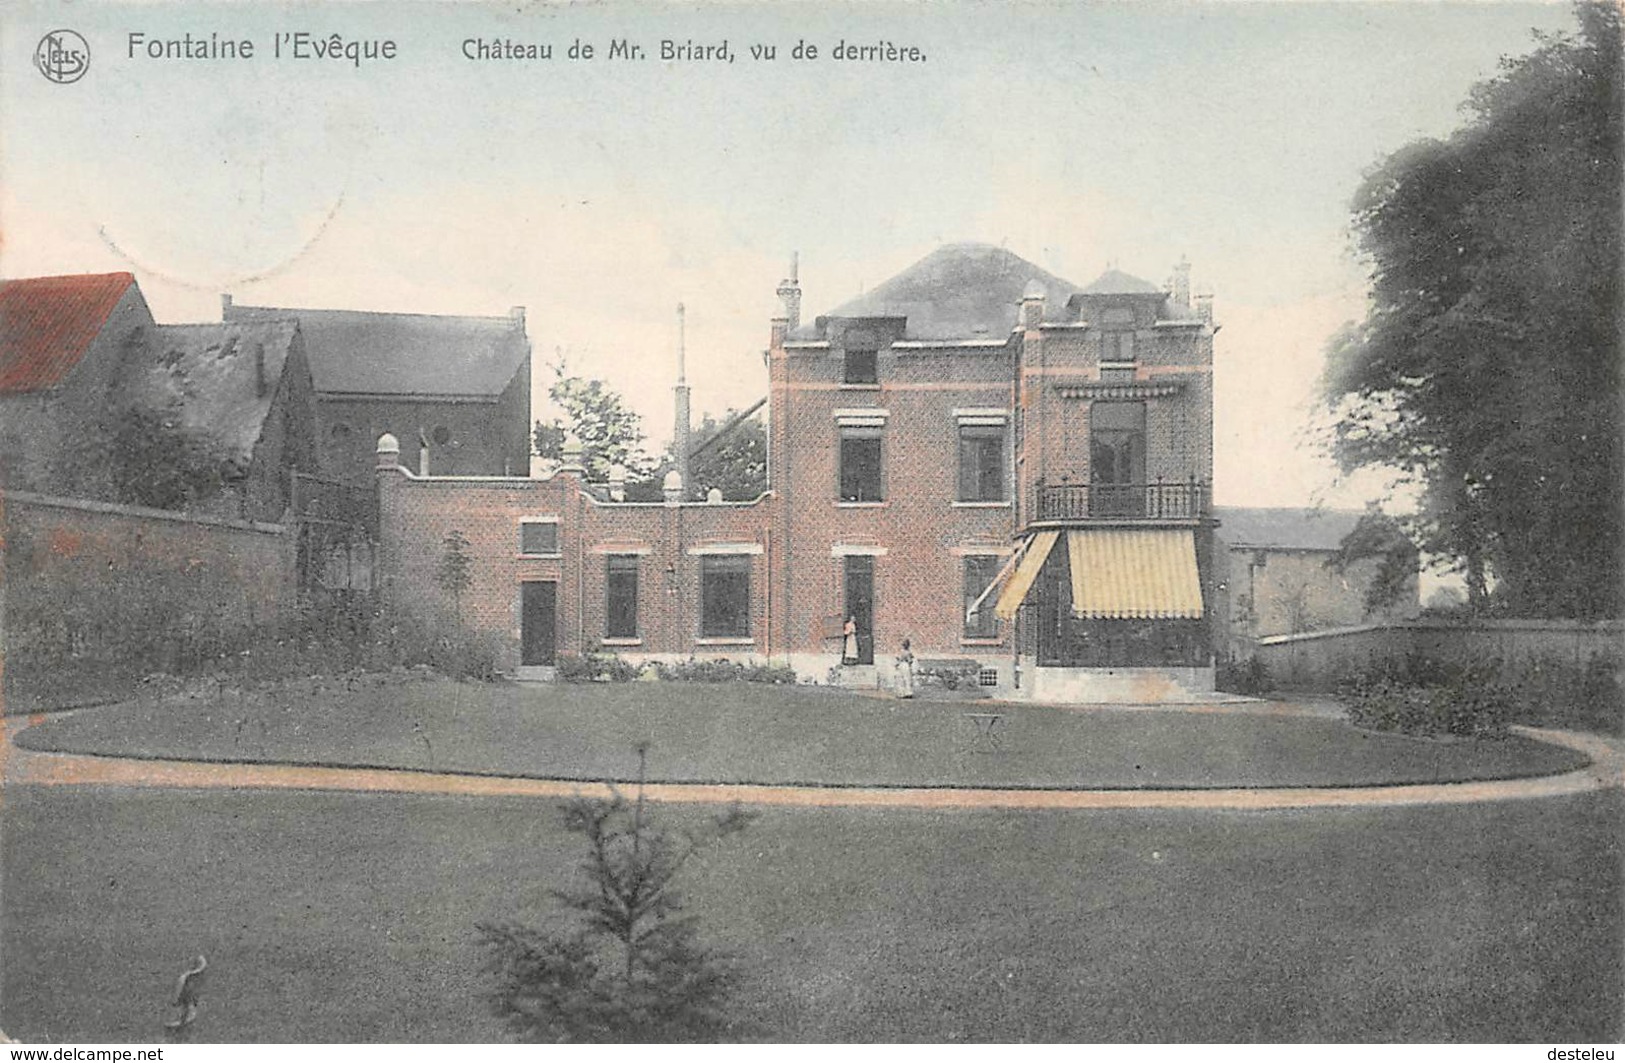 Château De Mr. Briard Vu De Derrière - Fontaine-l'Évêque - Fontaine-l'Evêque